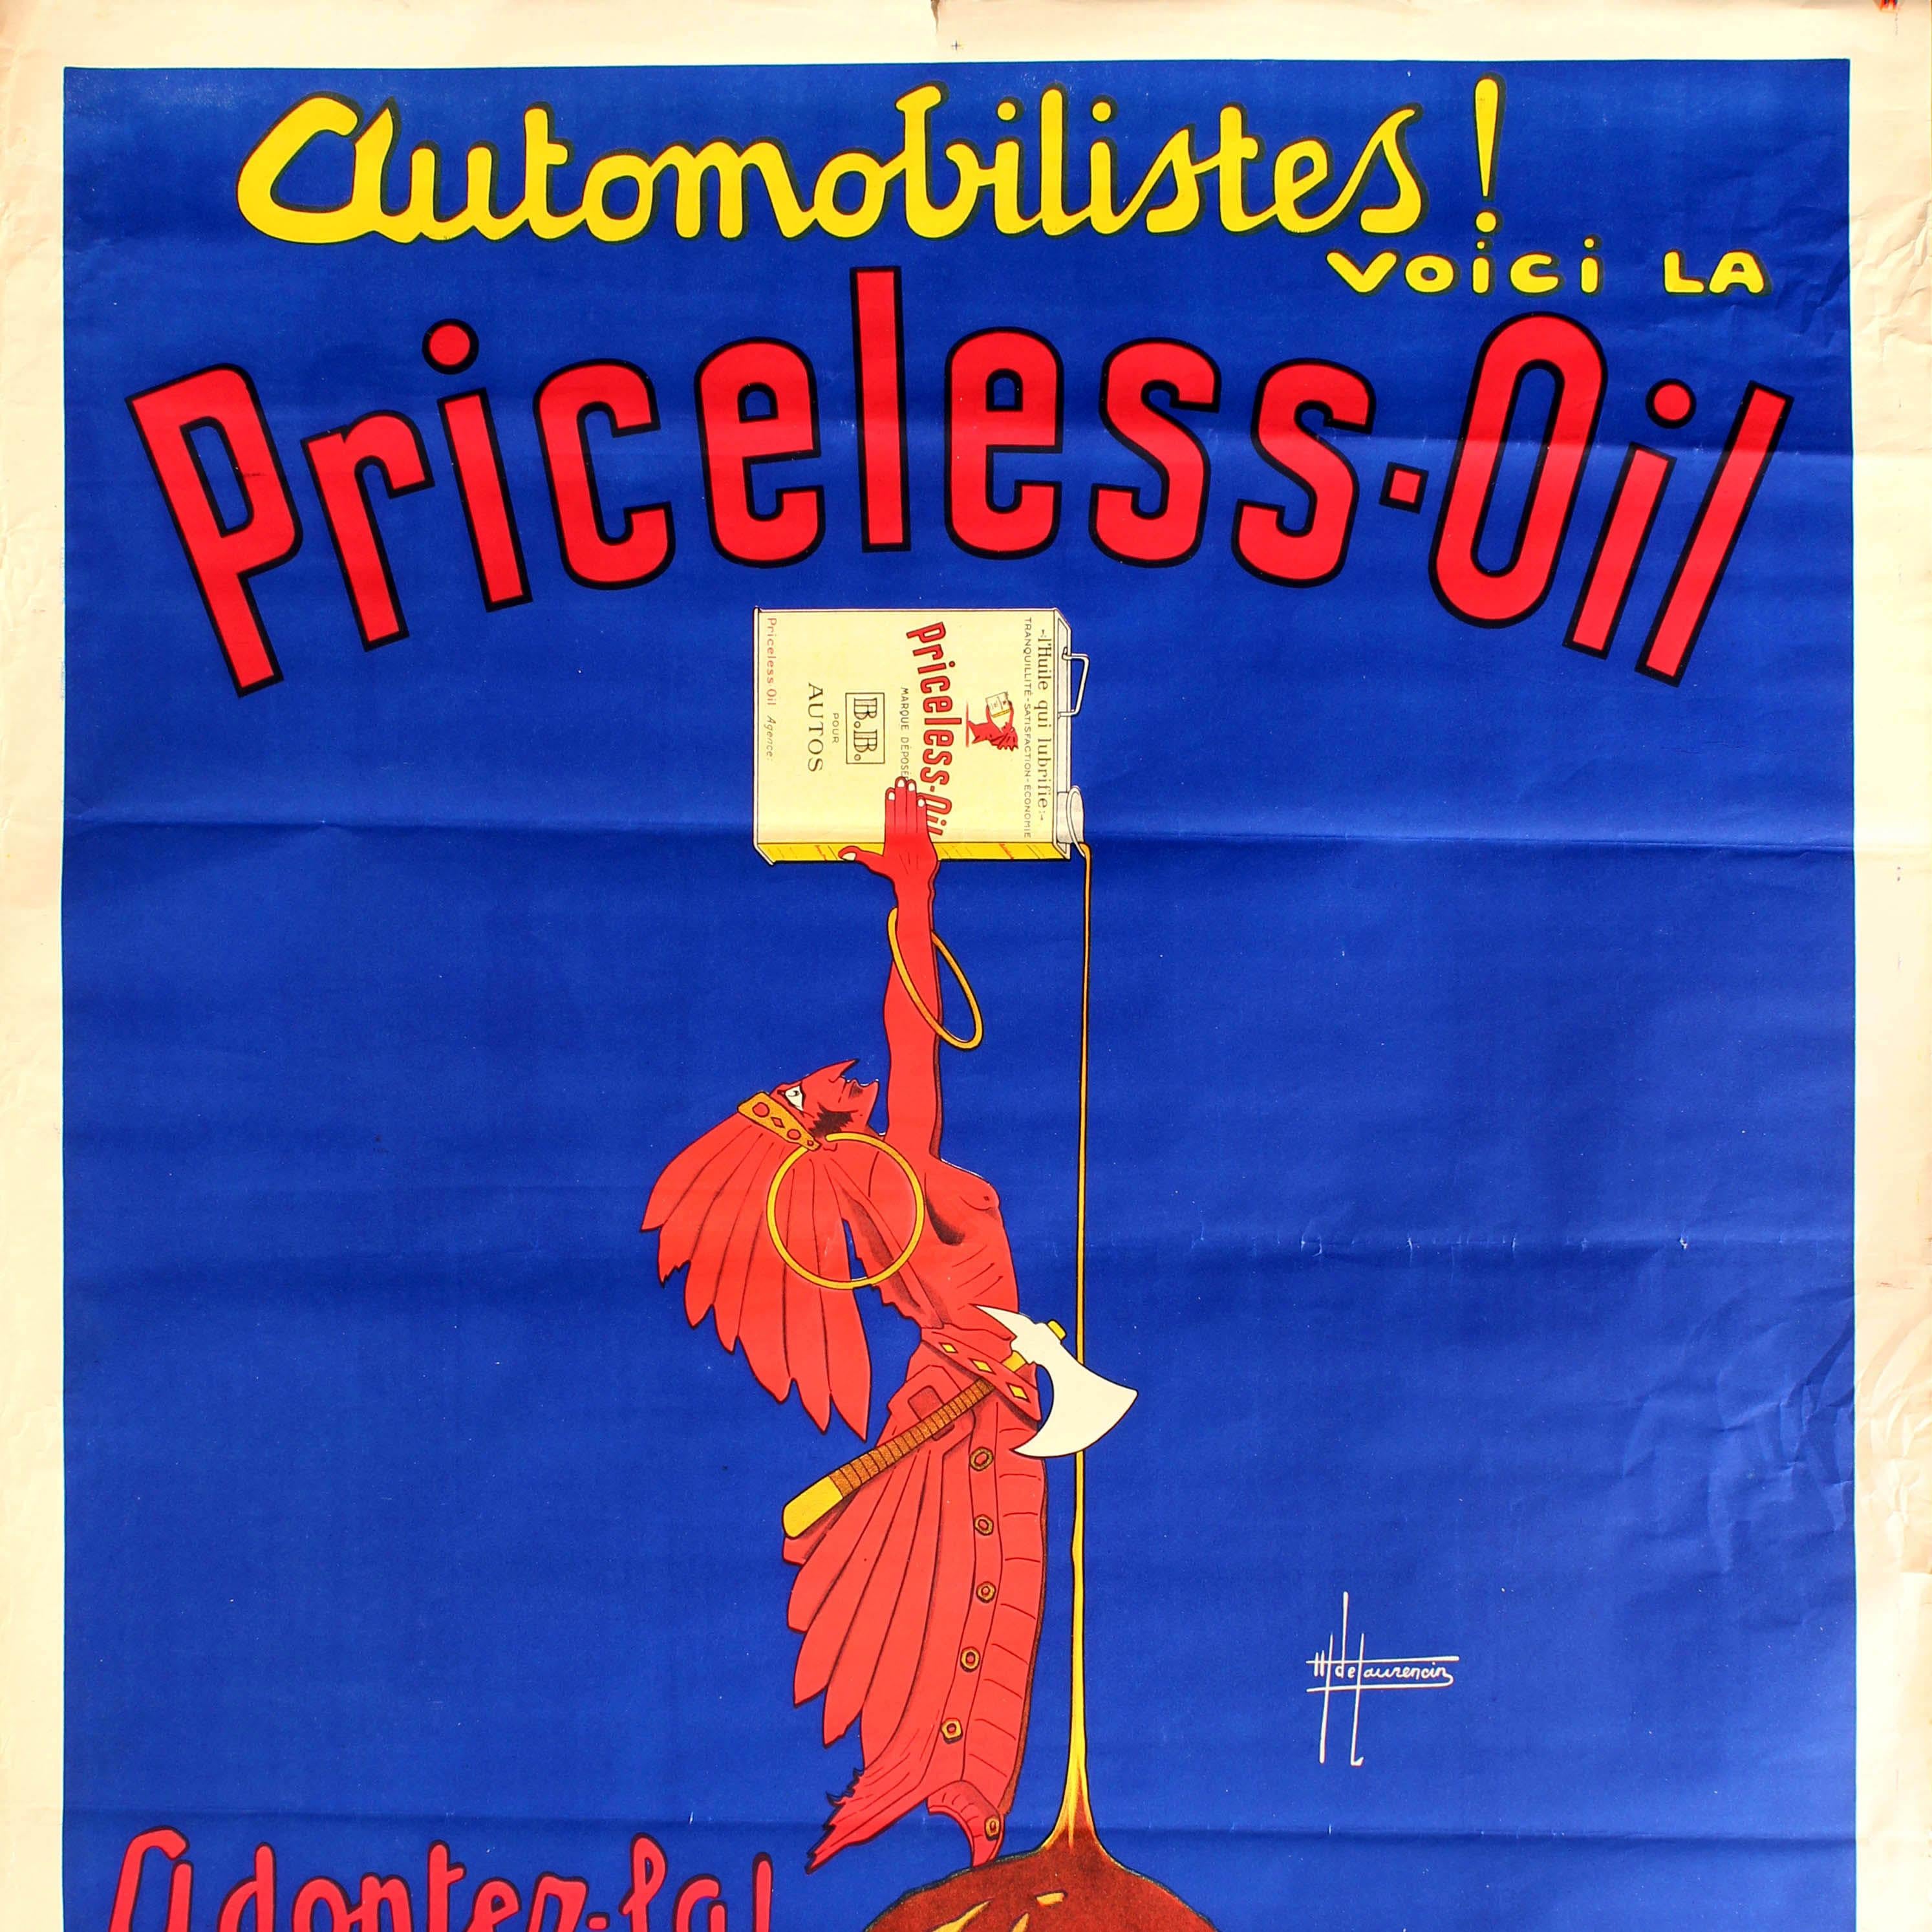 Français Grande affiche publicitaire originale Art Déco vintage Automobilistes voici la priceless oil en vente